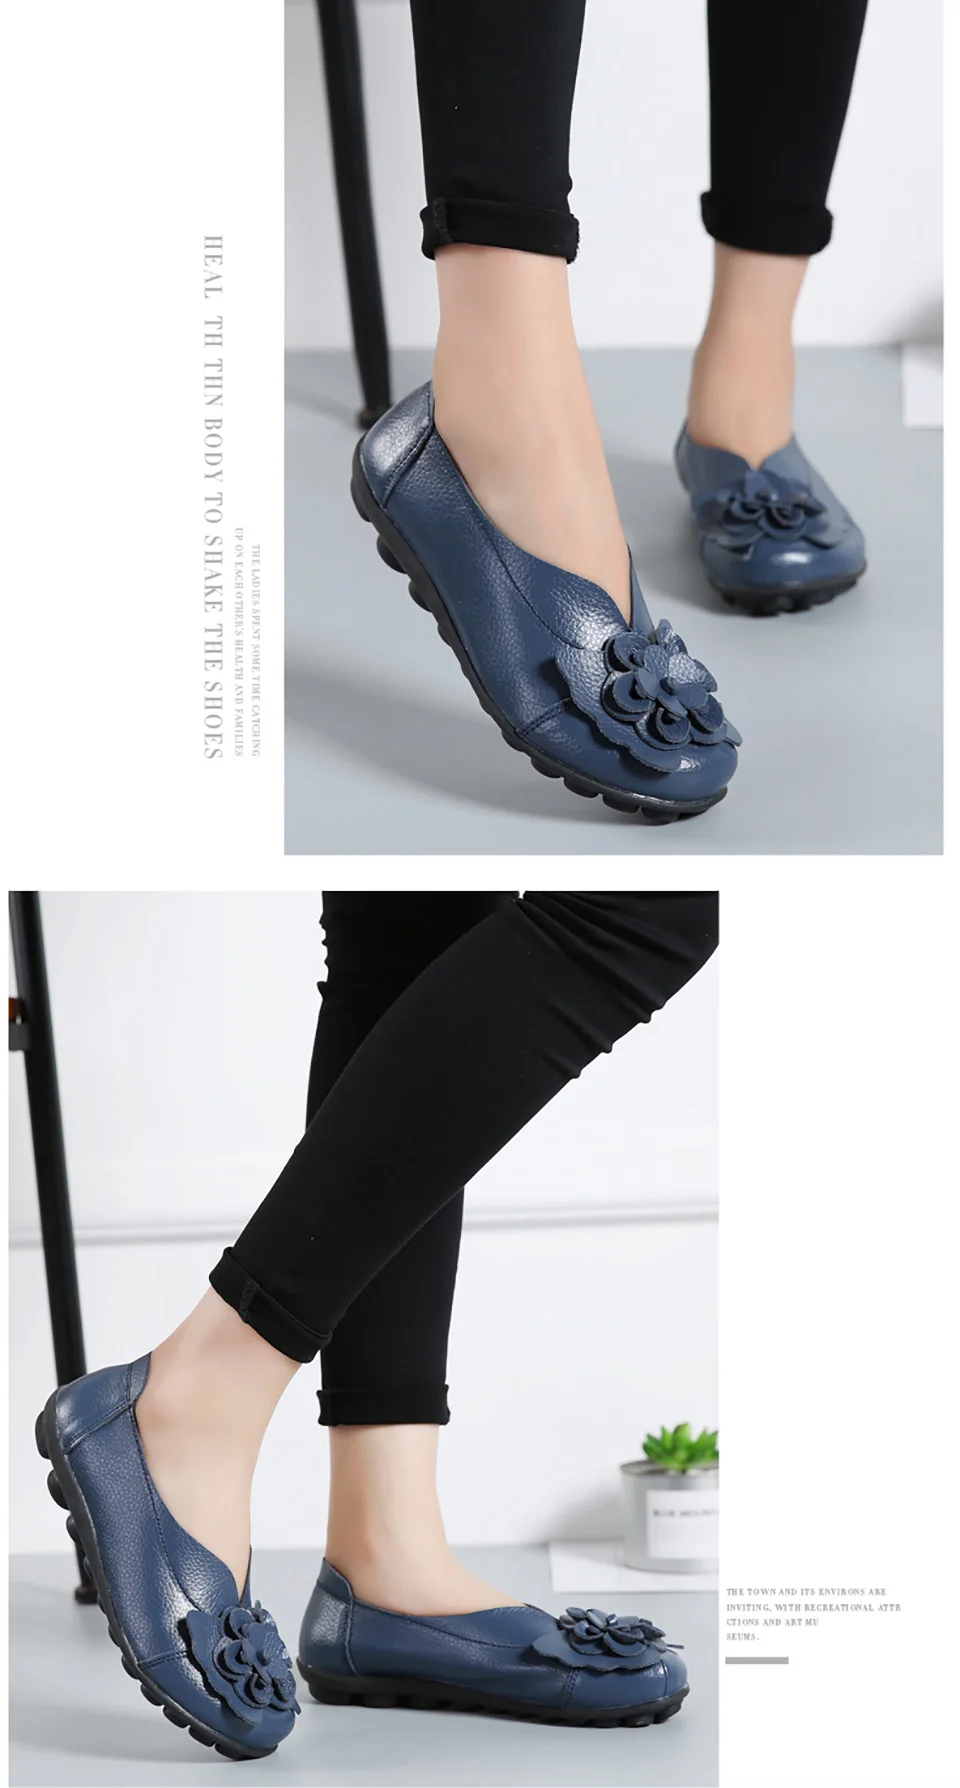 Ngouxm/Женская обувь на плоской подошве из натуральной кожи; женские лоферы; модная повседневная женская обувь на плоской подошве; Женская Удобная обувь нового дизайна